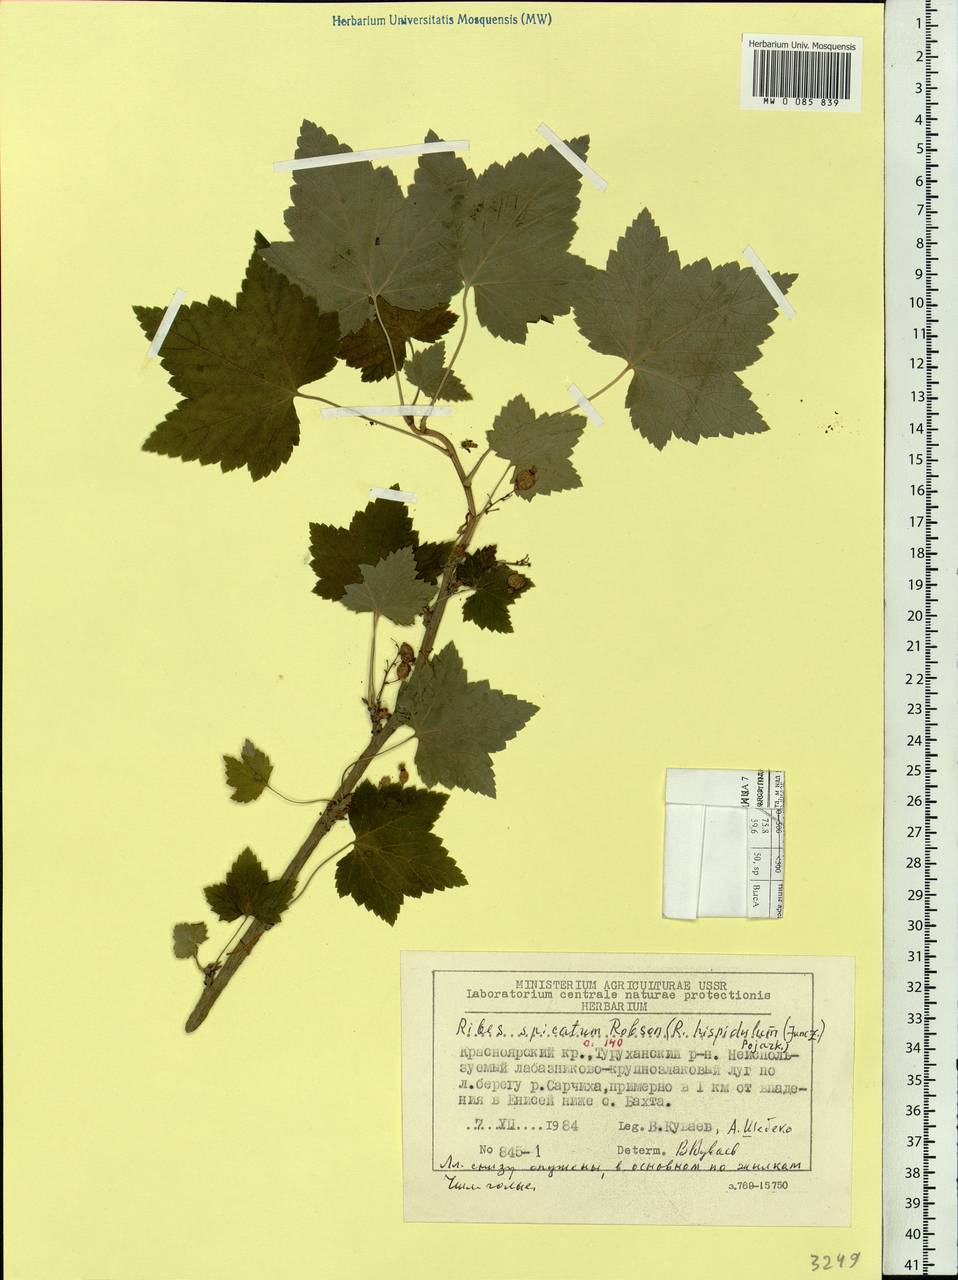 Ribes spicatum subsp. hispidulum (Jancz.) L. Hämet-Ahti, Siberia, Central Siberia (S3) (Russia)